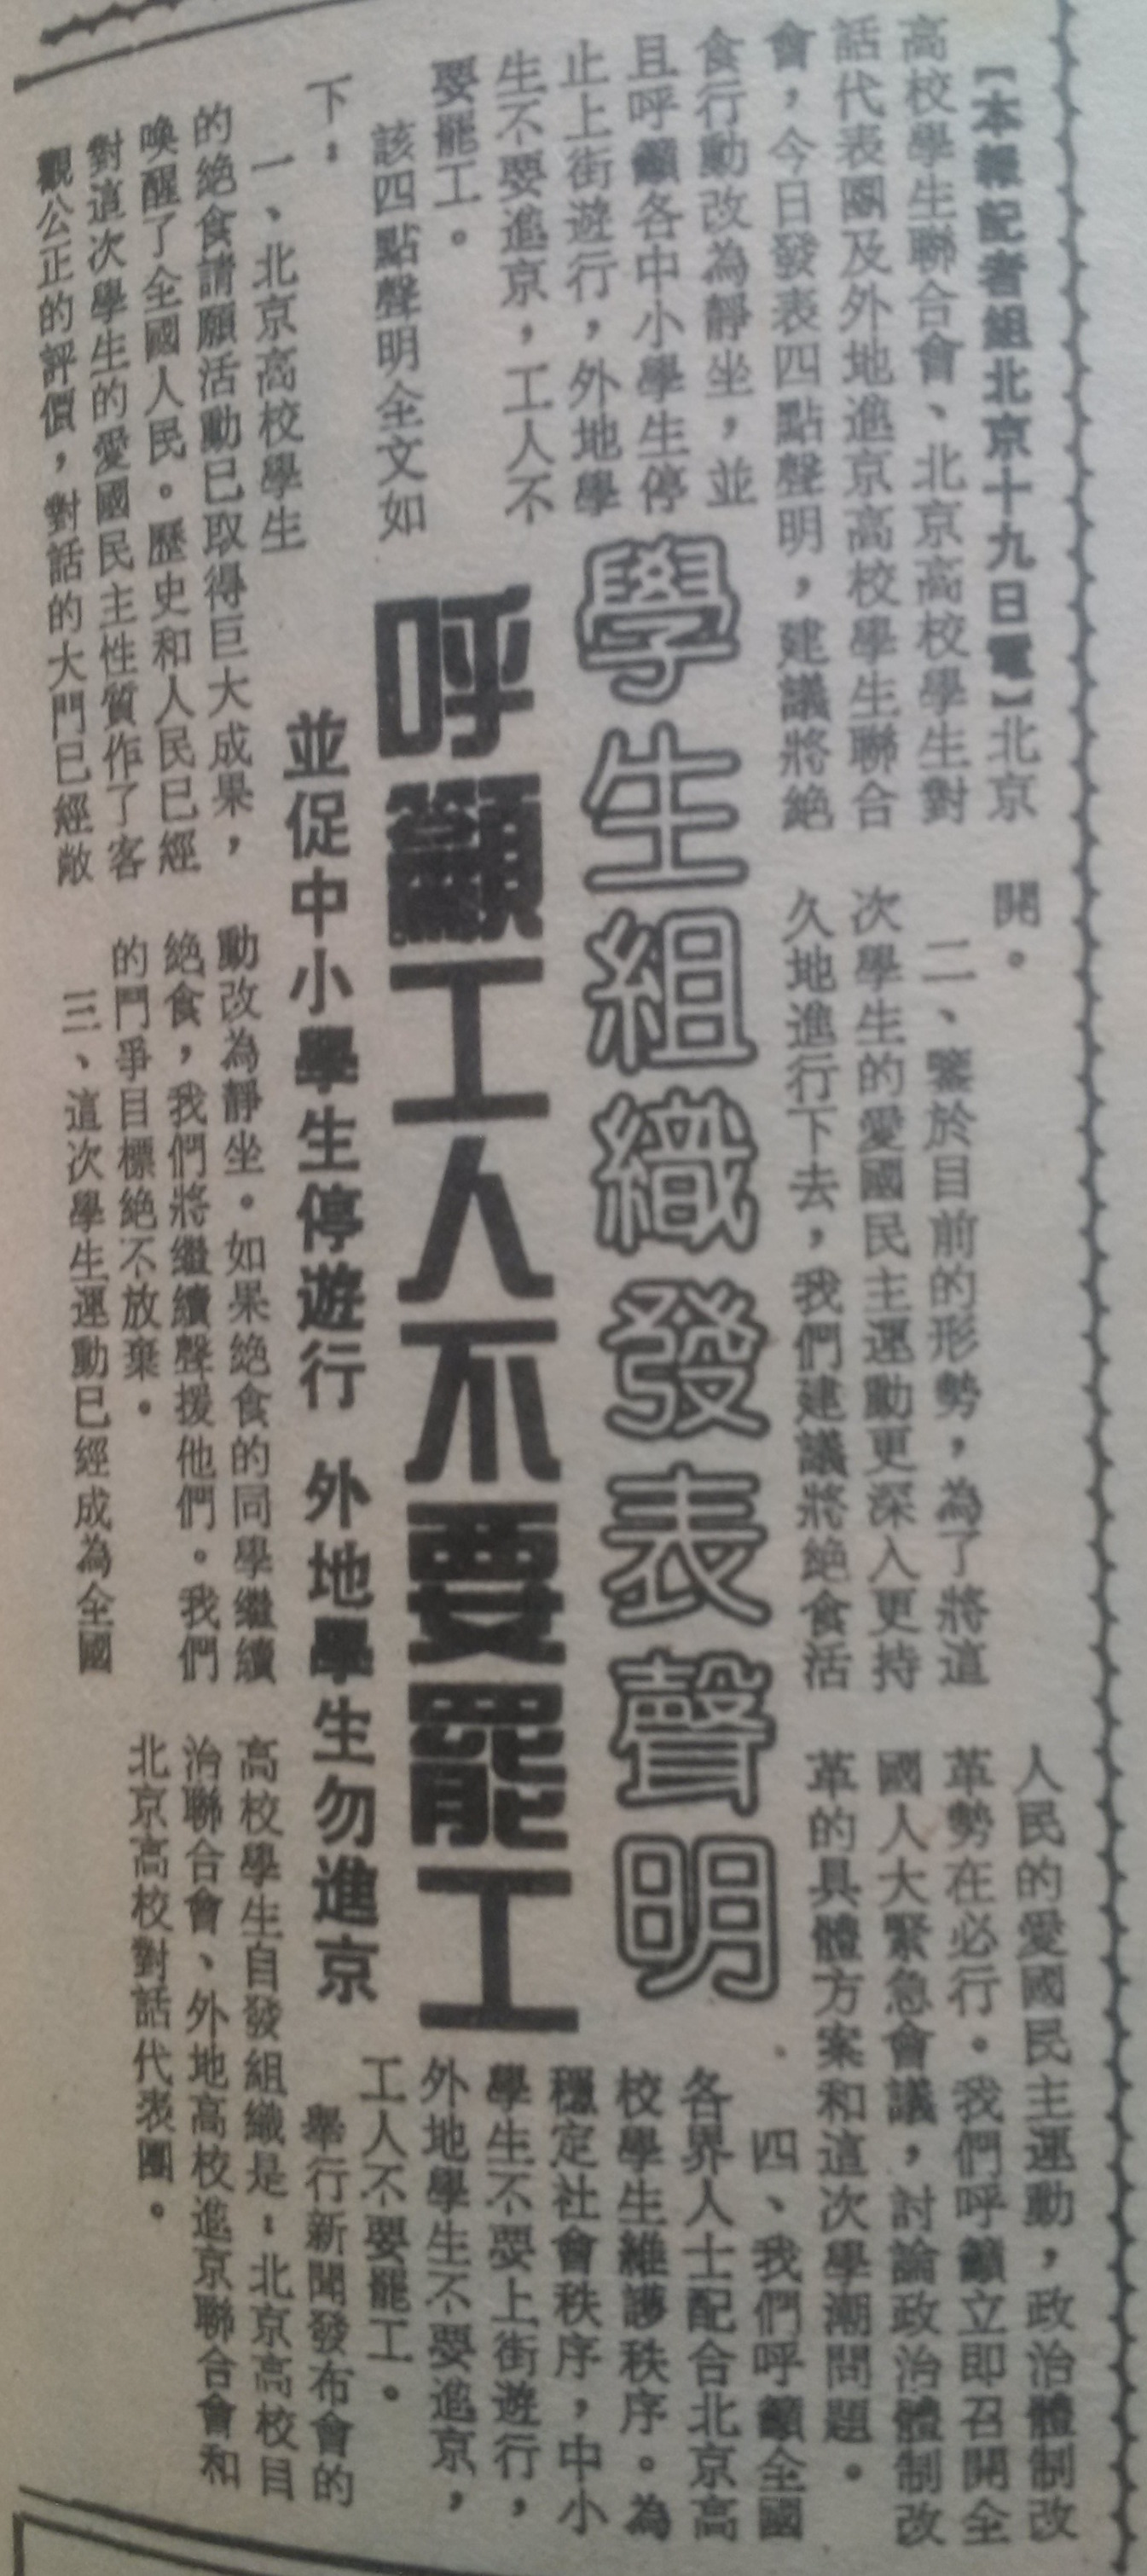 當時支持運動的香港《文匯報》在1989年5月20日的報導：部分學生團體舉行新聞發佈會，呼籲工人不要罷工。